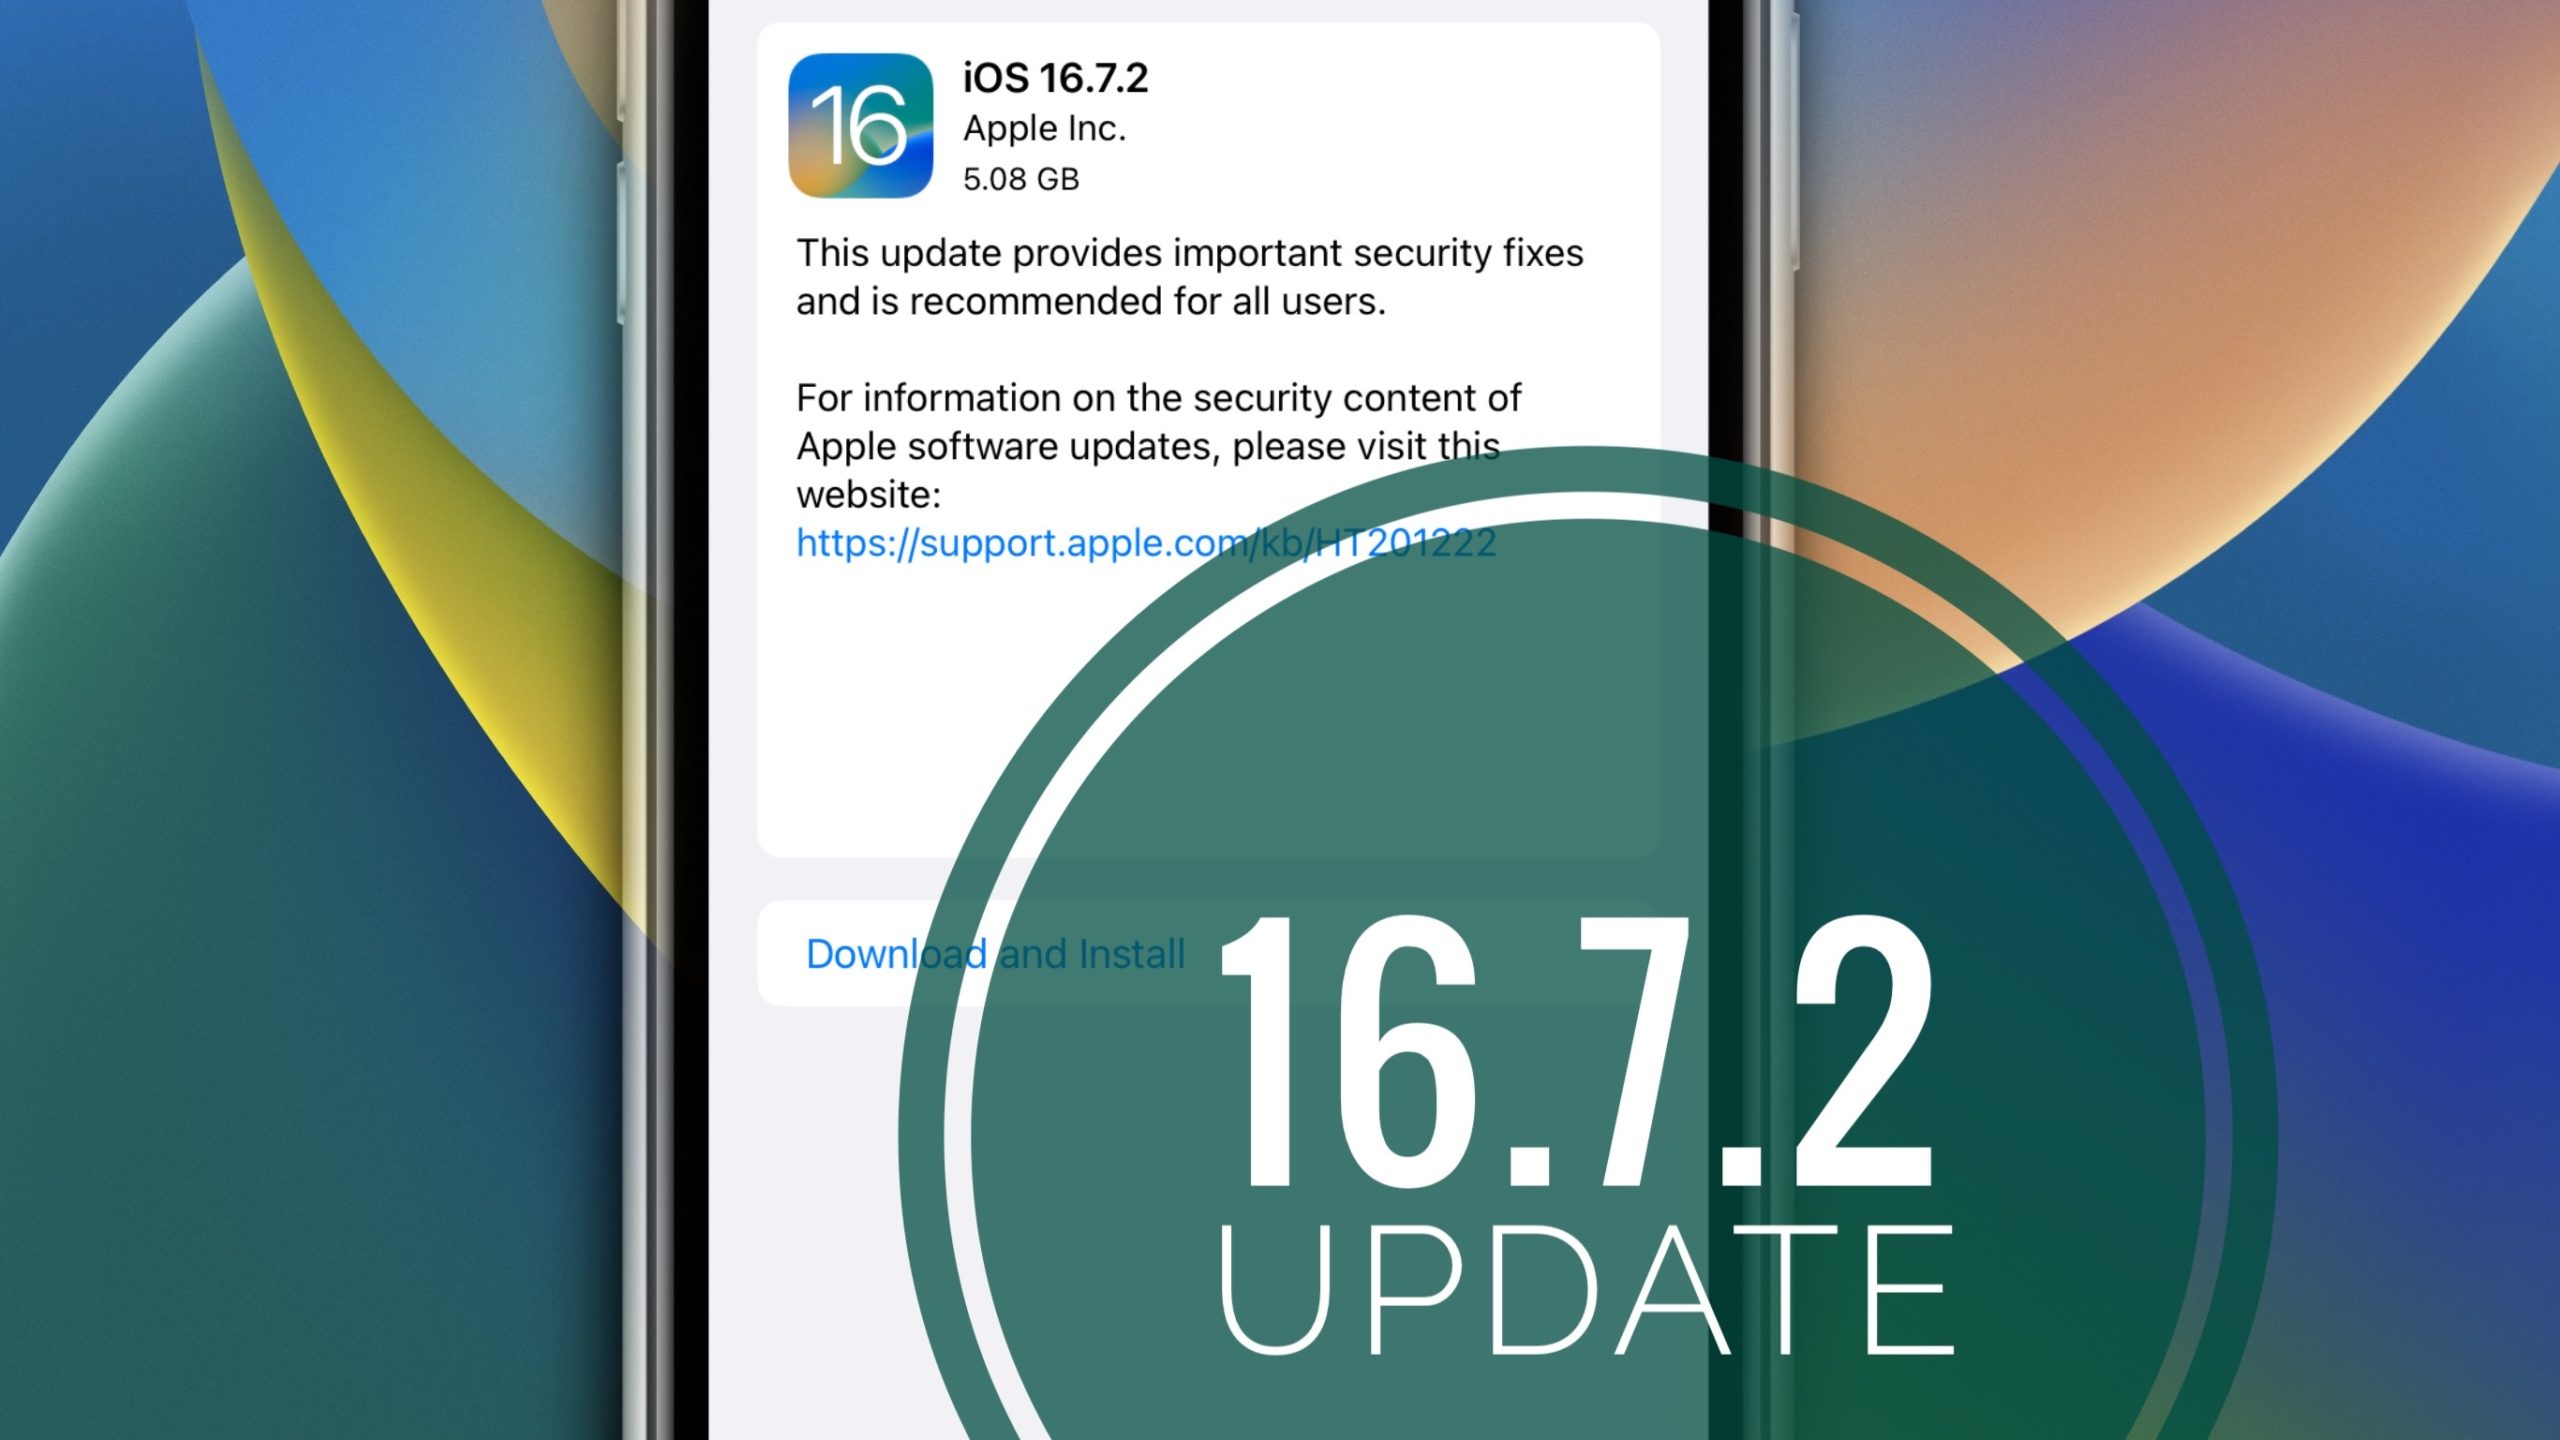 ios 16.7.2 update